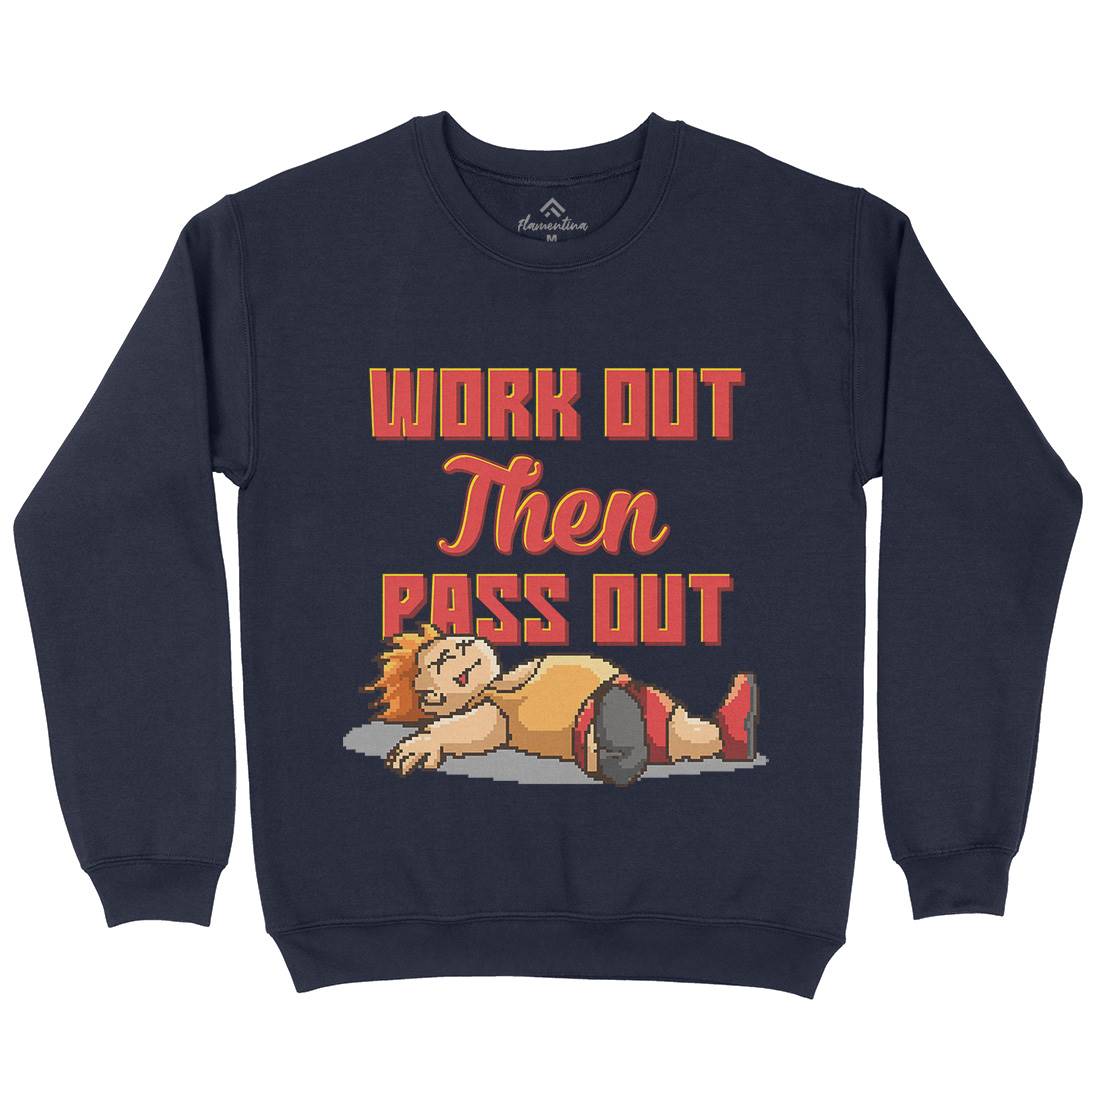 Work Out Then Pass Out Kids Crew Neck Sweatshirt Geek B981